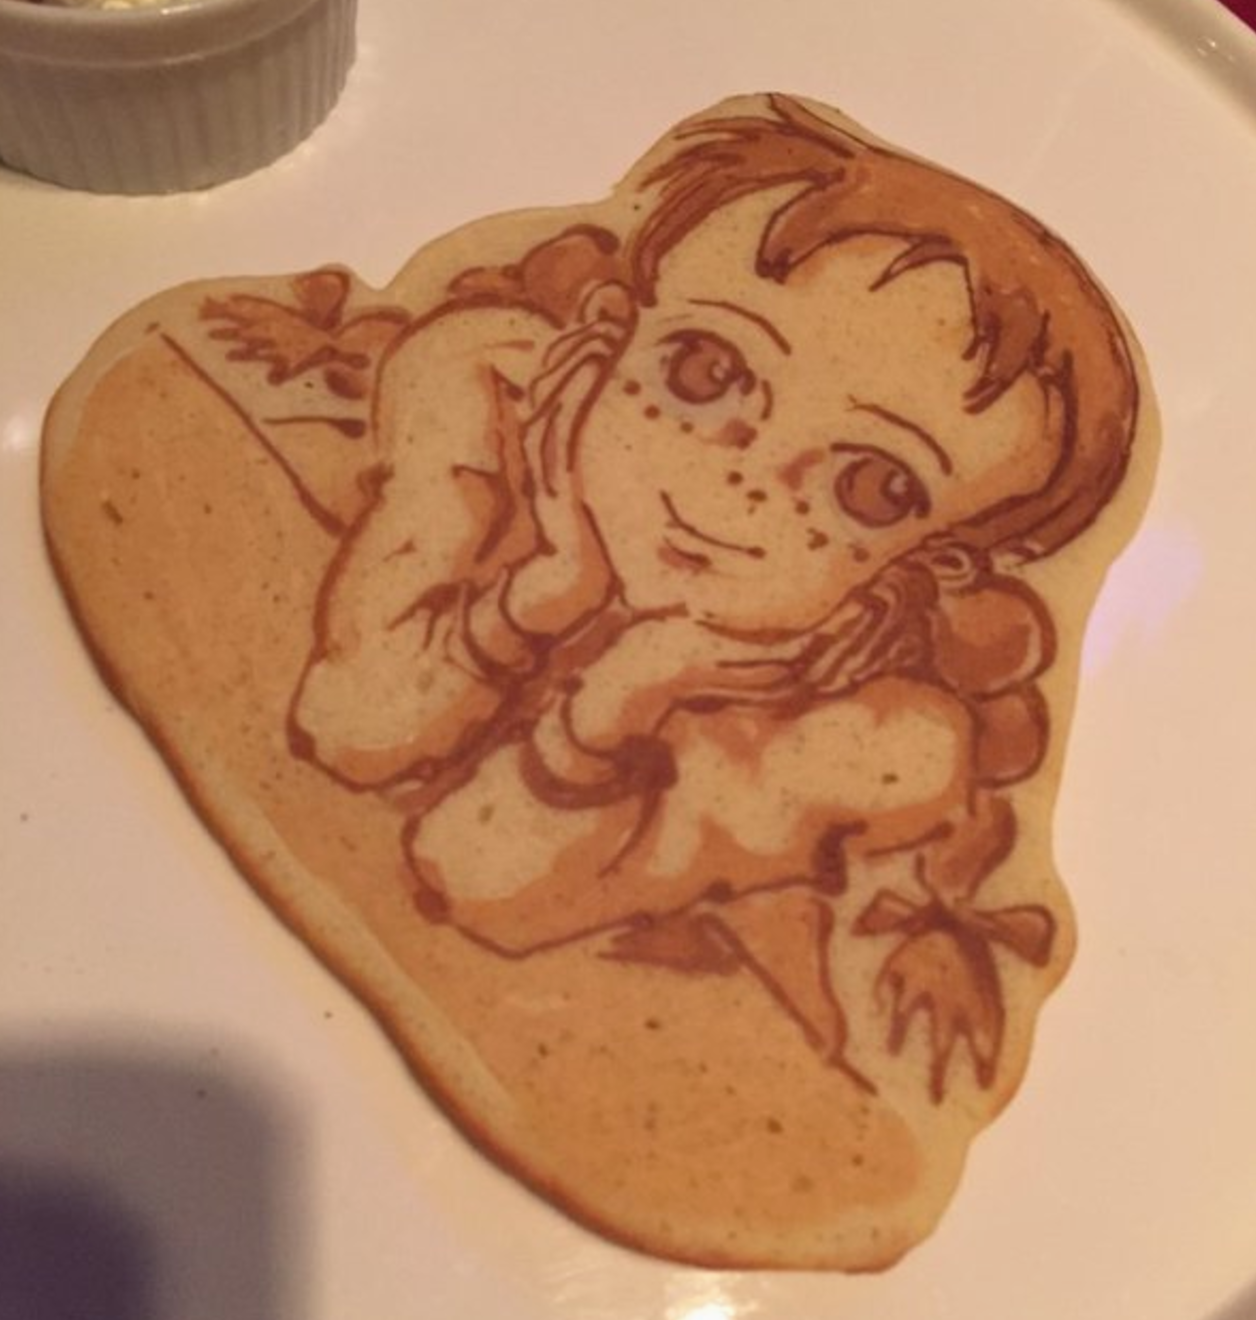 Let's take a look at pancake arts 